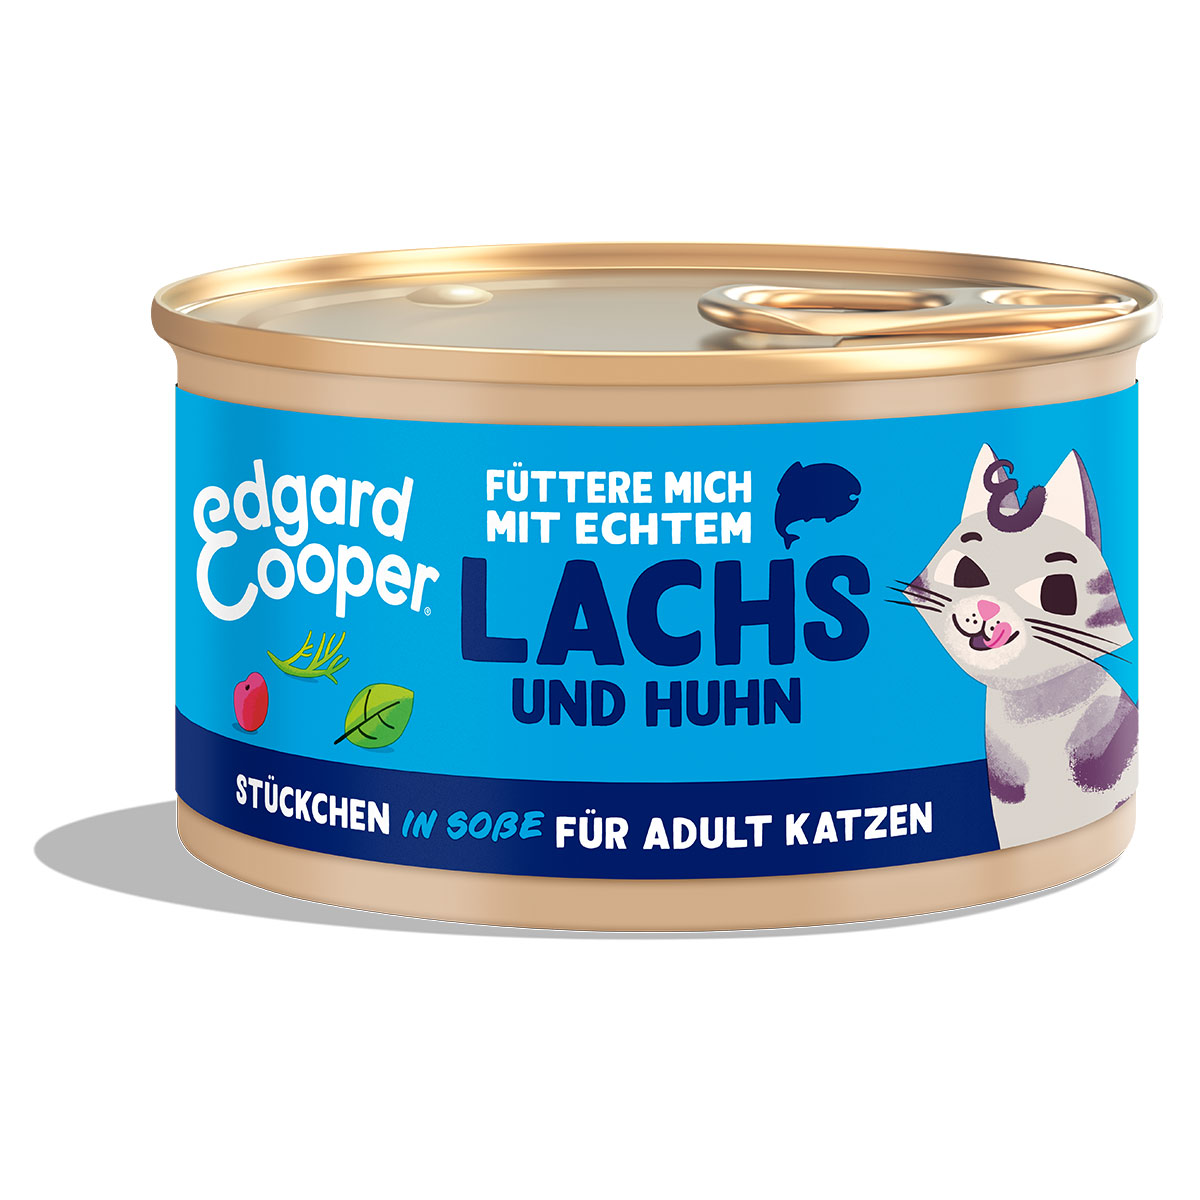 Edgard & Cooper Stückchen in Soße Lachs und Huhn 6x85g von Edgard & Cooper